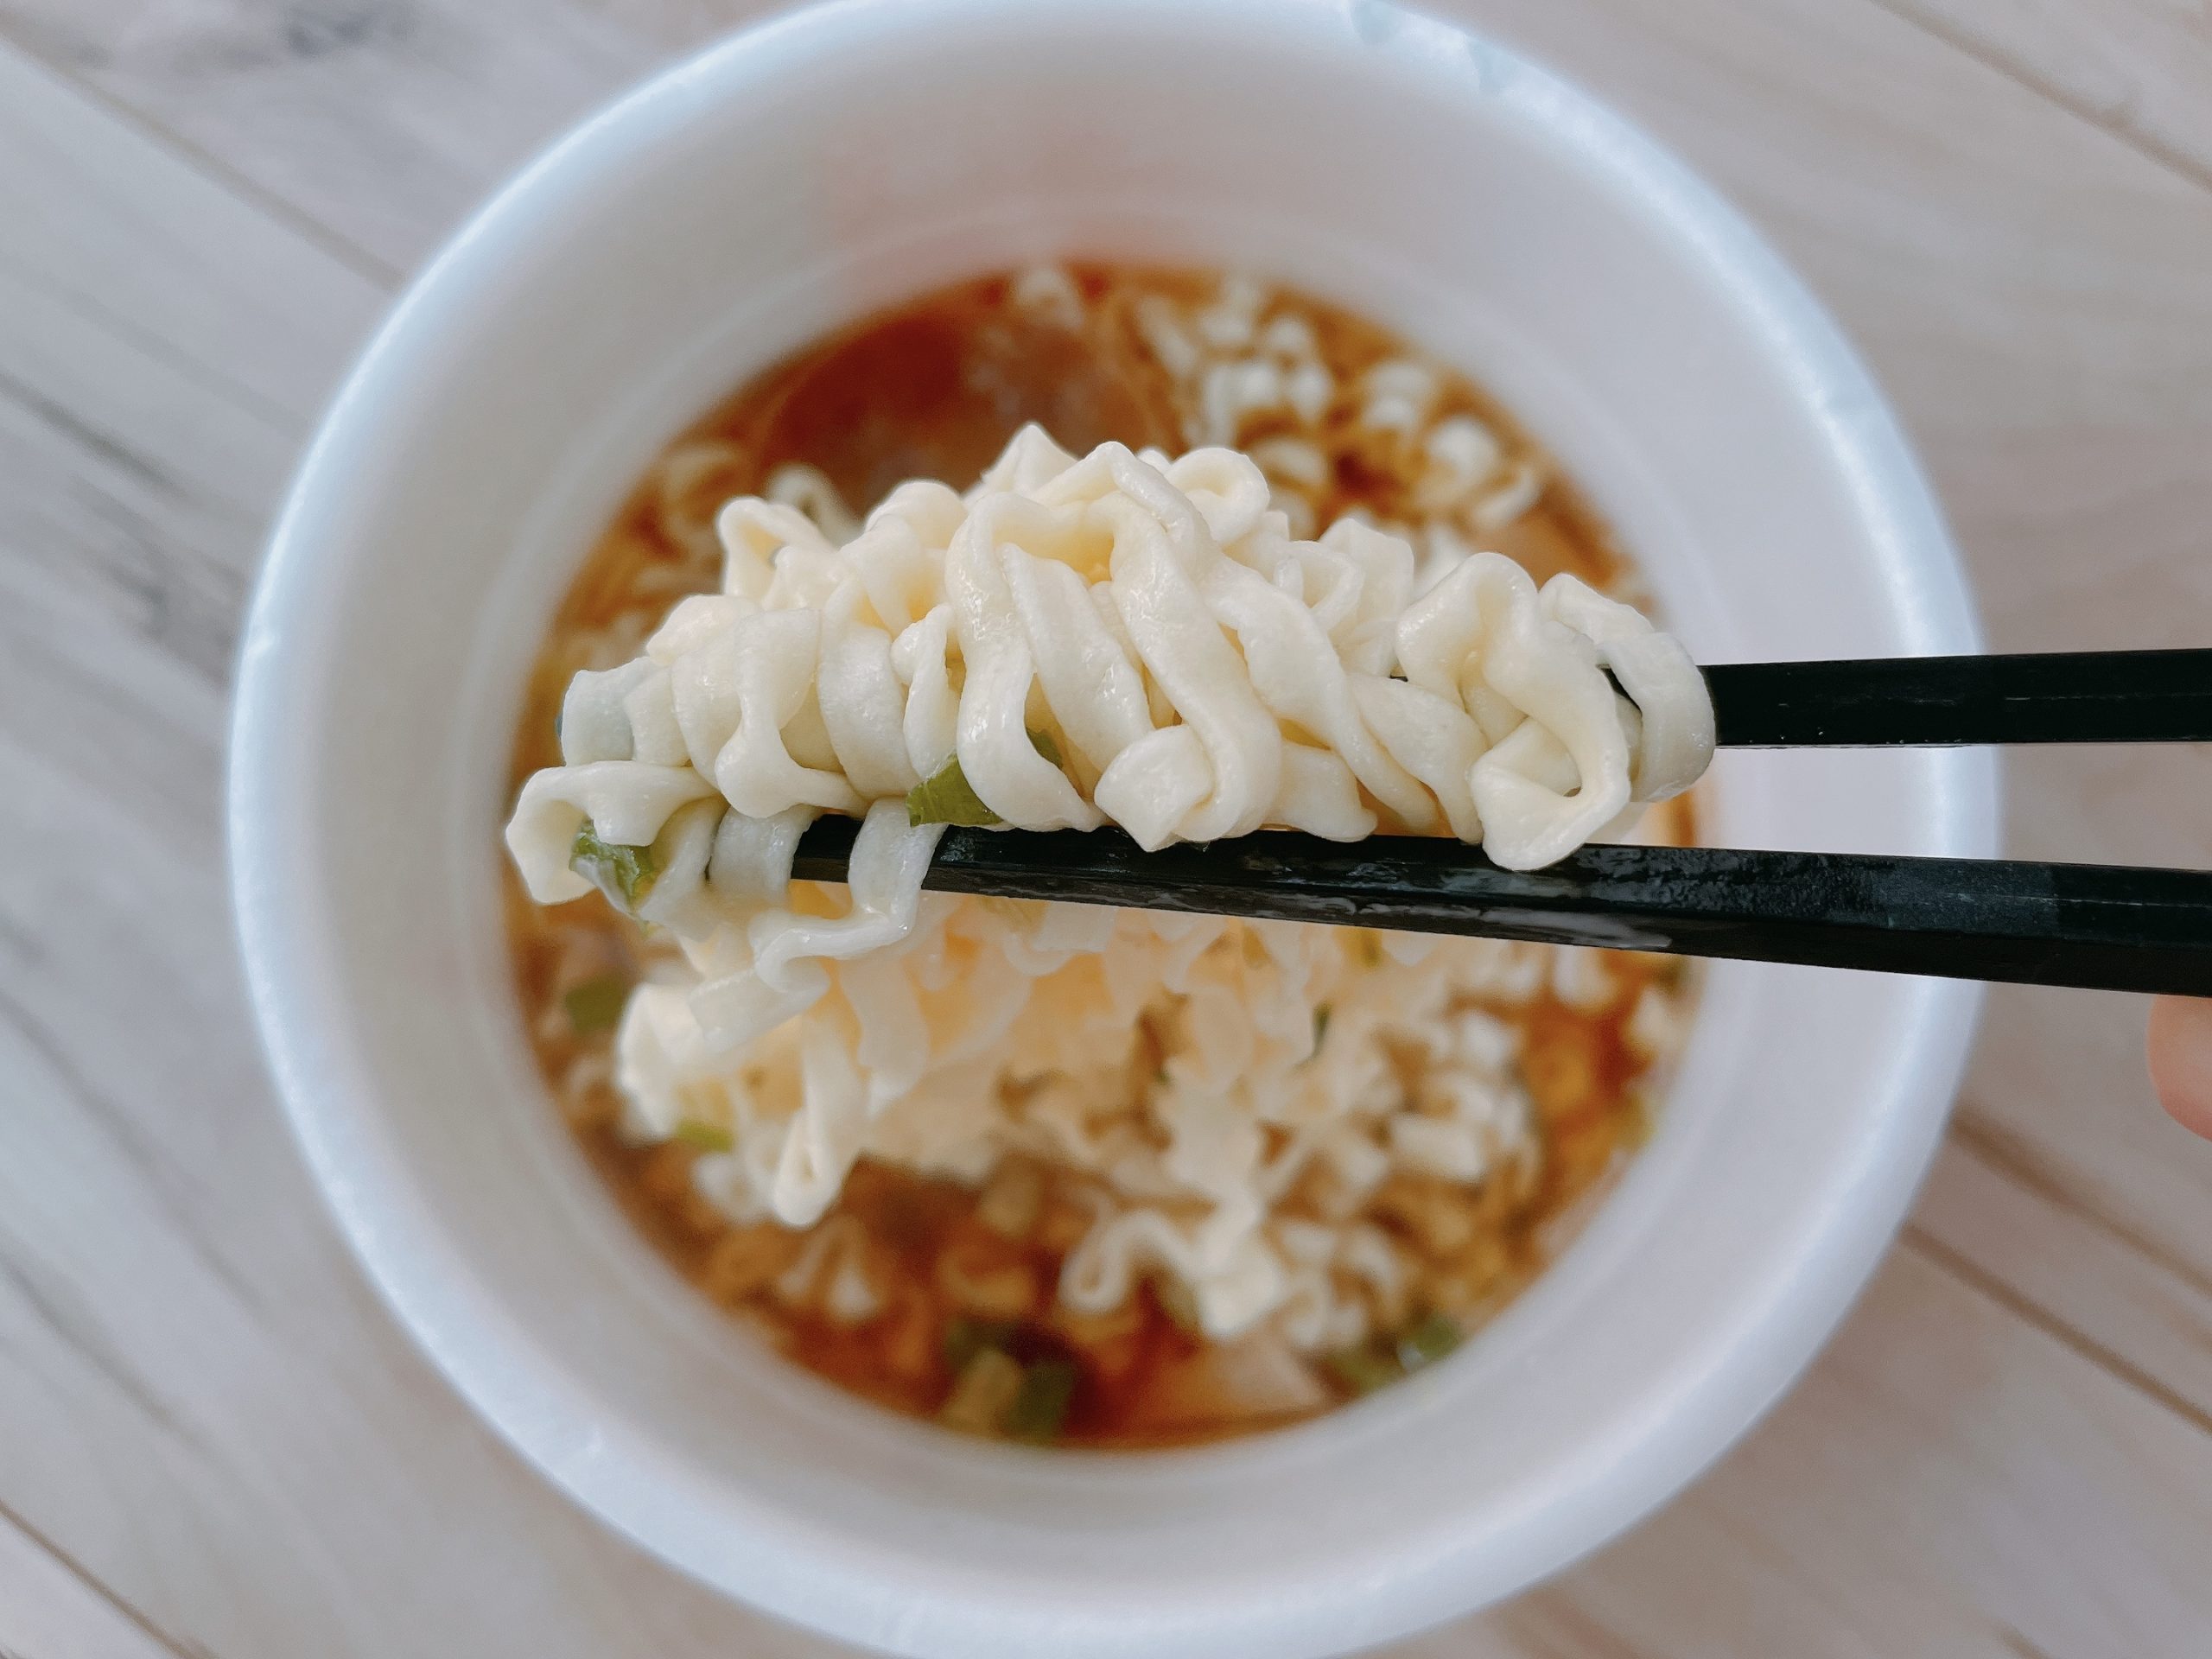 サッポロ一番 旅麺 会津・喜多方 醤油ラーメン